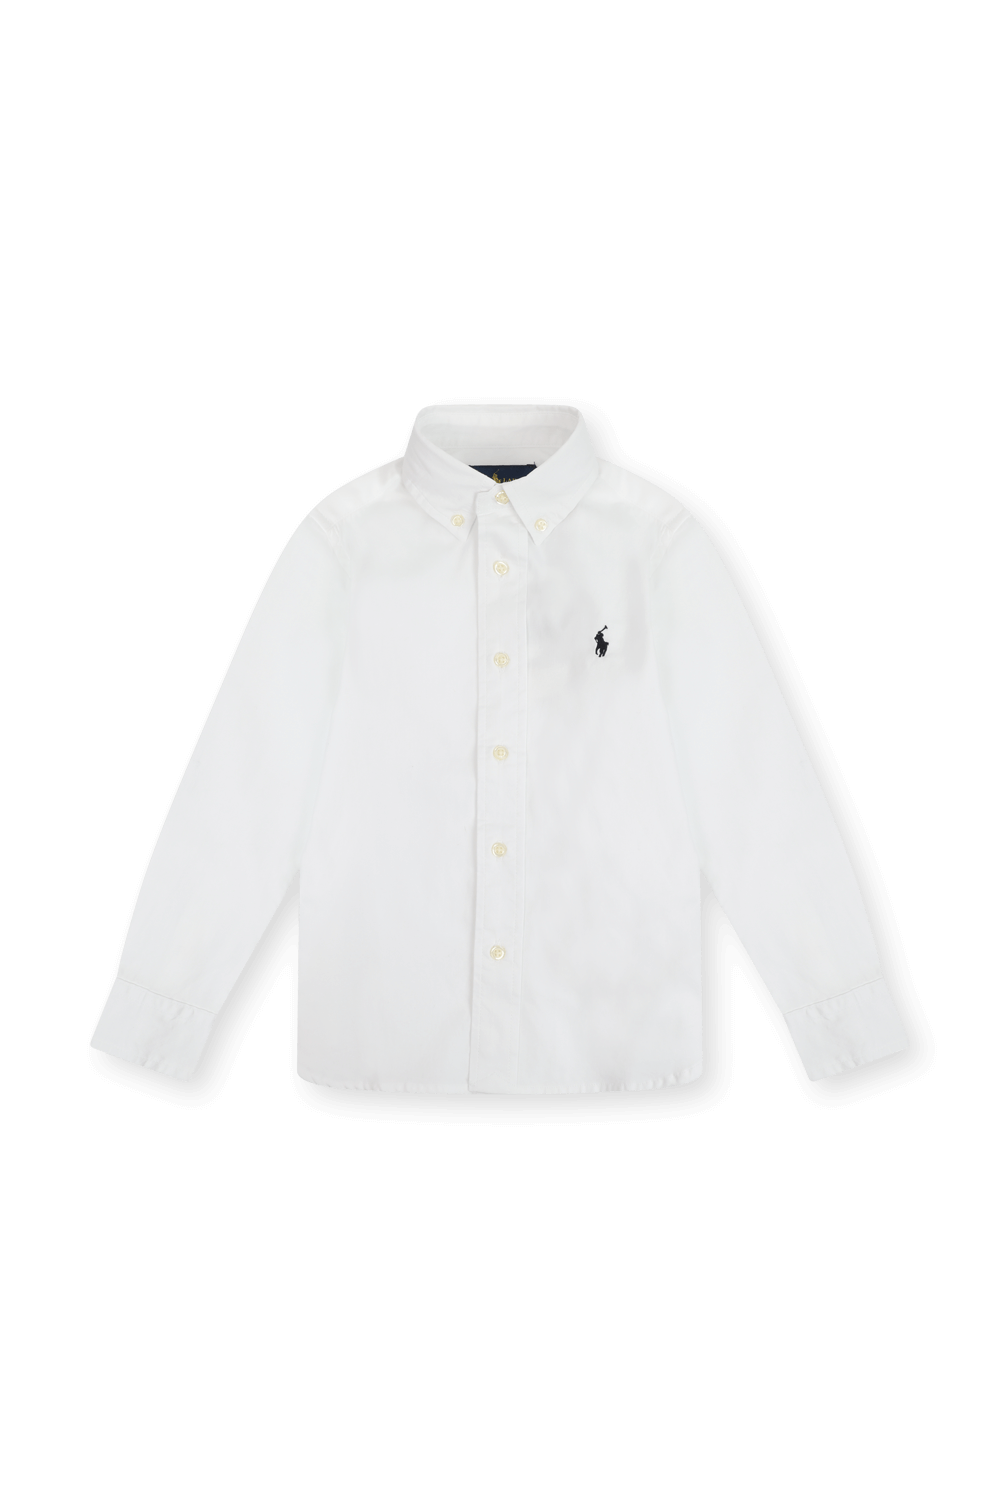 גילאי 5-7 חולצת כפתורים בלבן POLO RALPH LAUREN KIDS